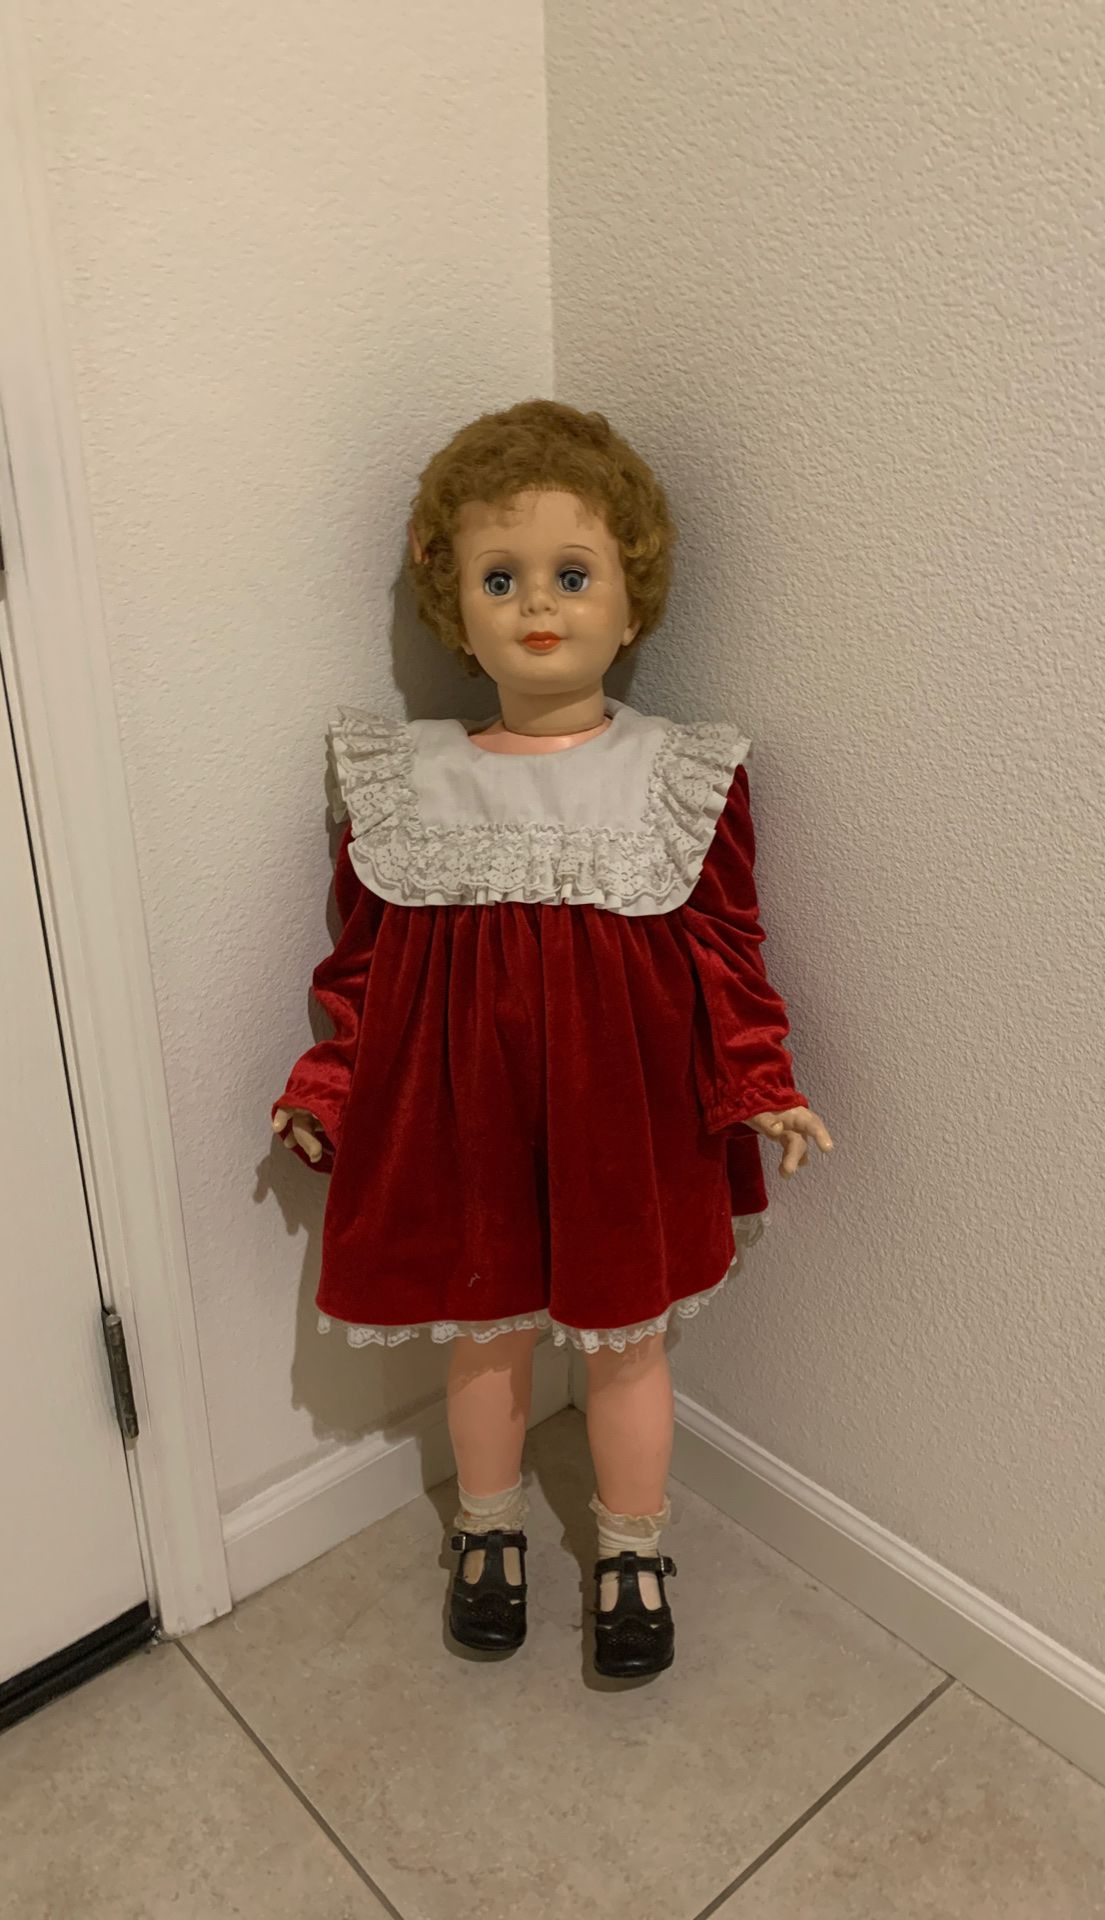 Old doll three feet tall,